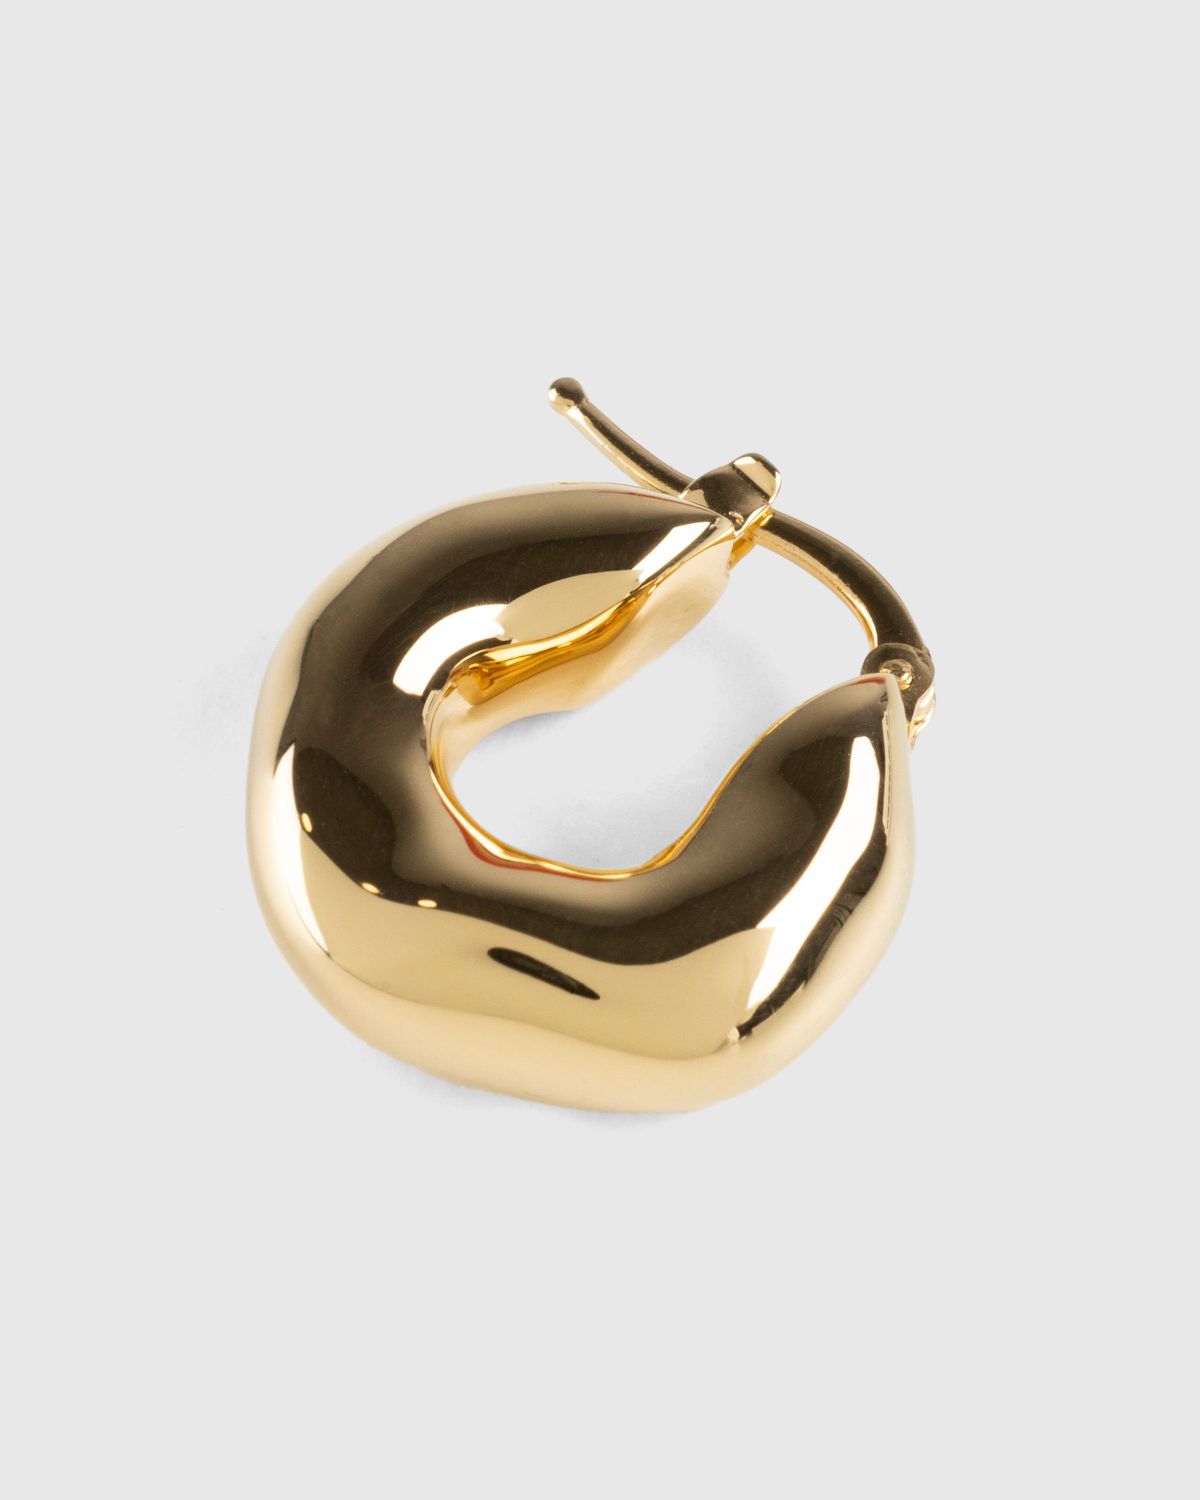 Jil Sander – New Lightness Earring Gold